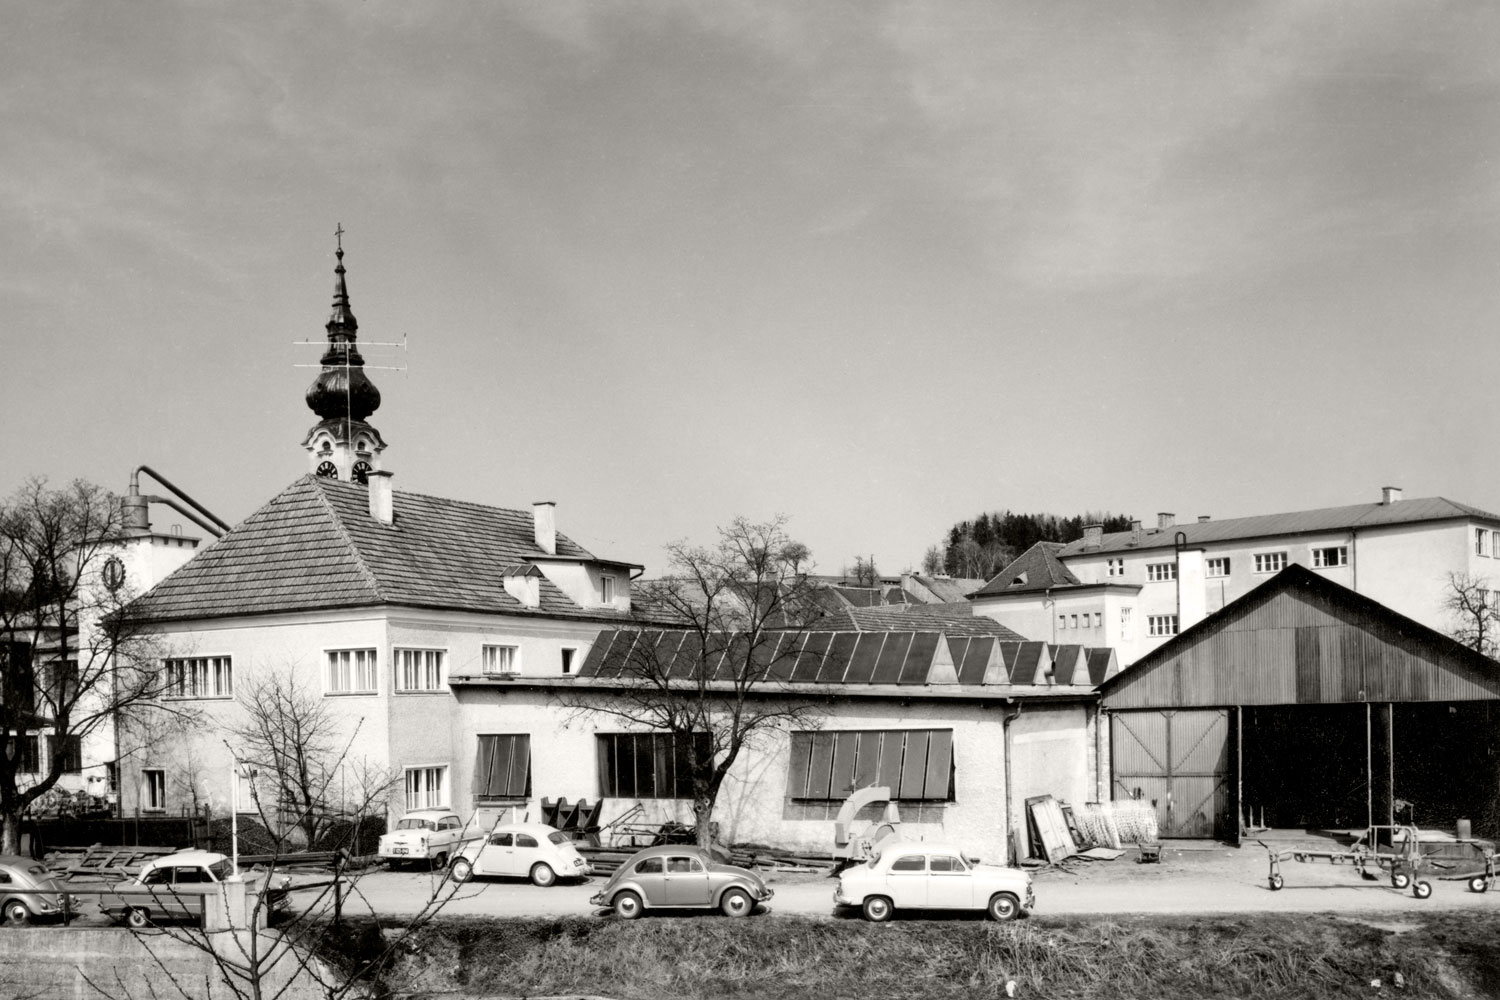 Une partie du centre-ville de Grieskirchen : l’usine 1 PÖTTINGER vers 1960. La « Coccinelle VW » jouit d’une popularité visible parmi les collaborateurs de PÖTTINGER.